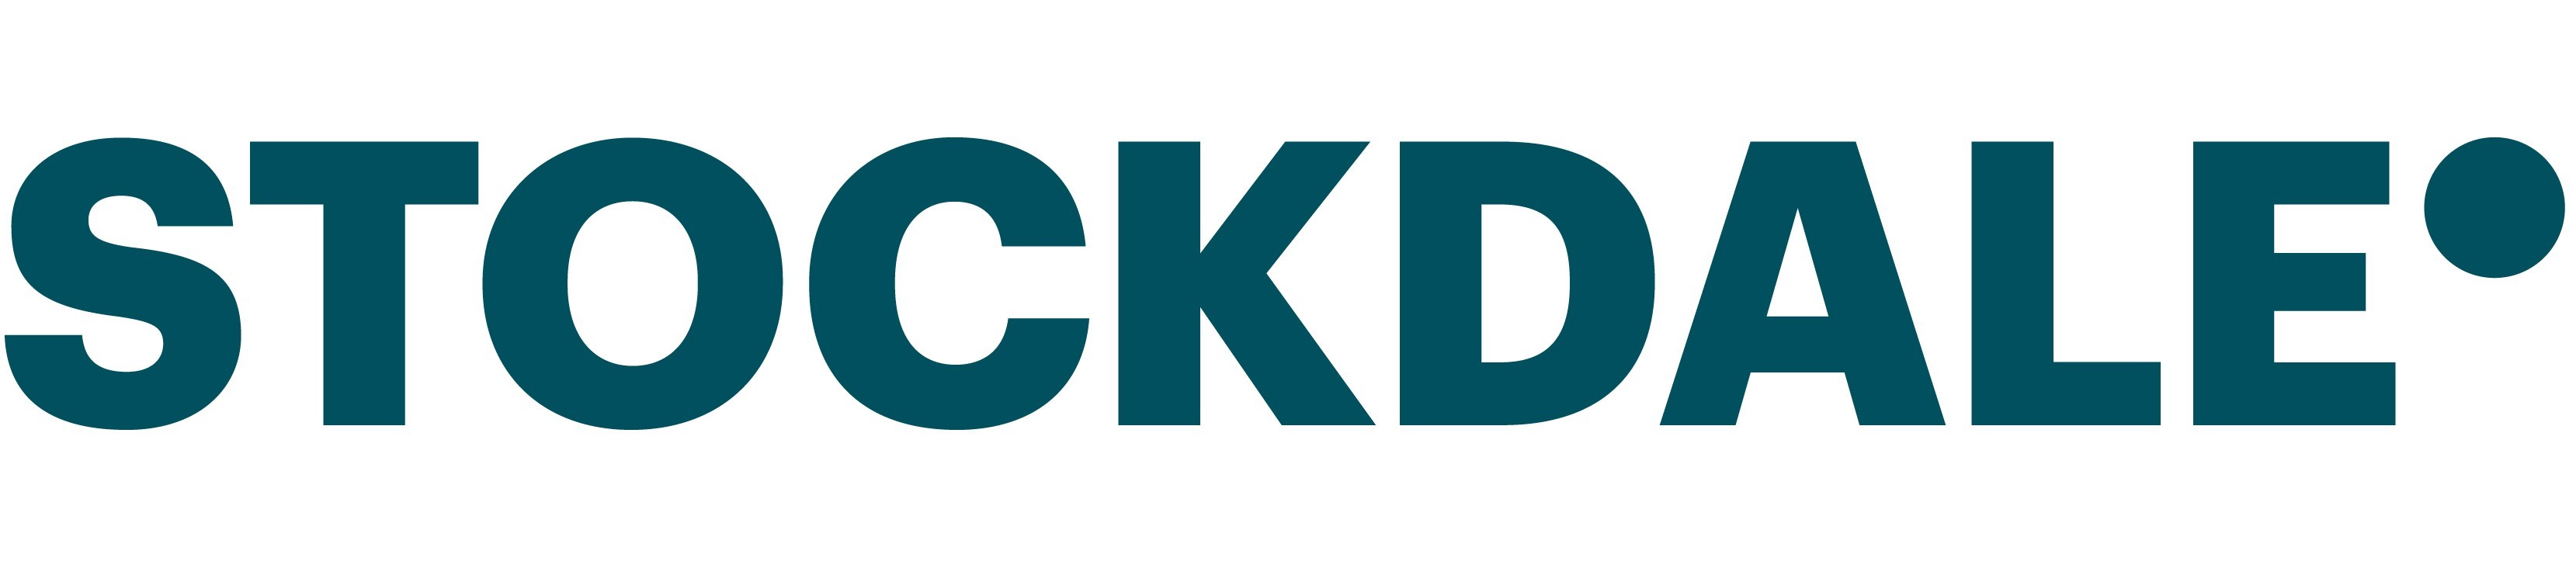 Stockdale Rebrand in September 2019